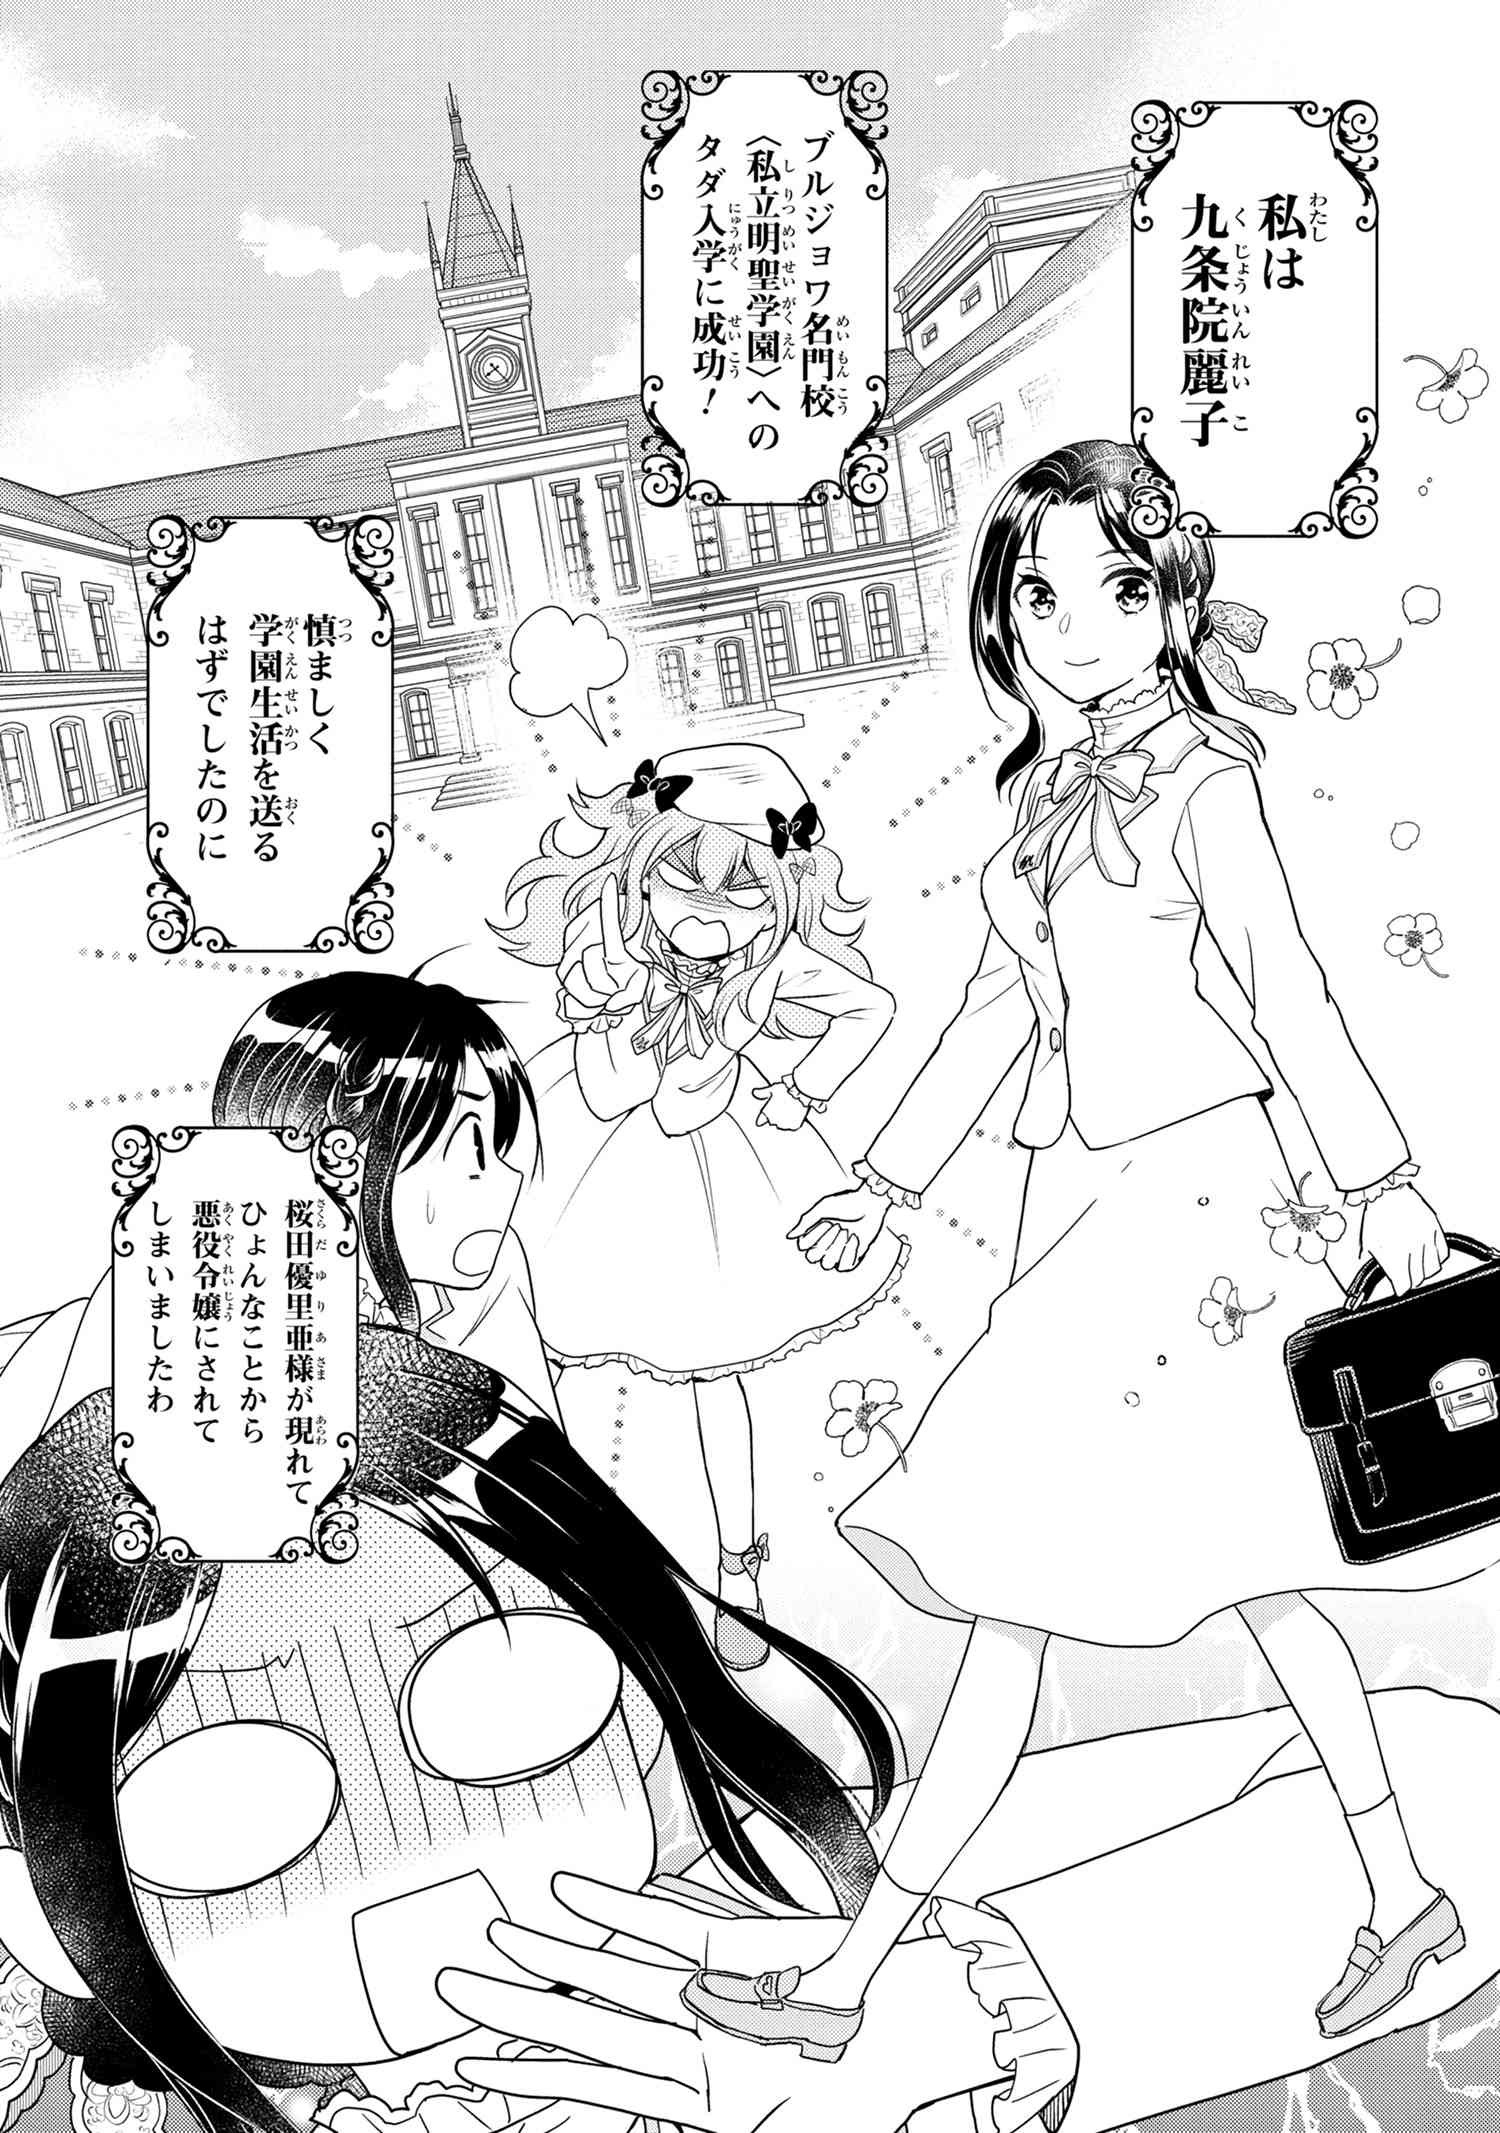 Reiko no Fuugi Akuyaku Reijou to Yobarete imasu ga, tada no Binbou Musume desu - Chapter 2-1 - Page 1